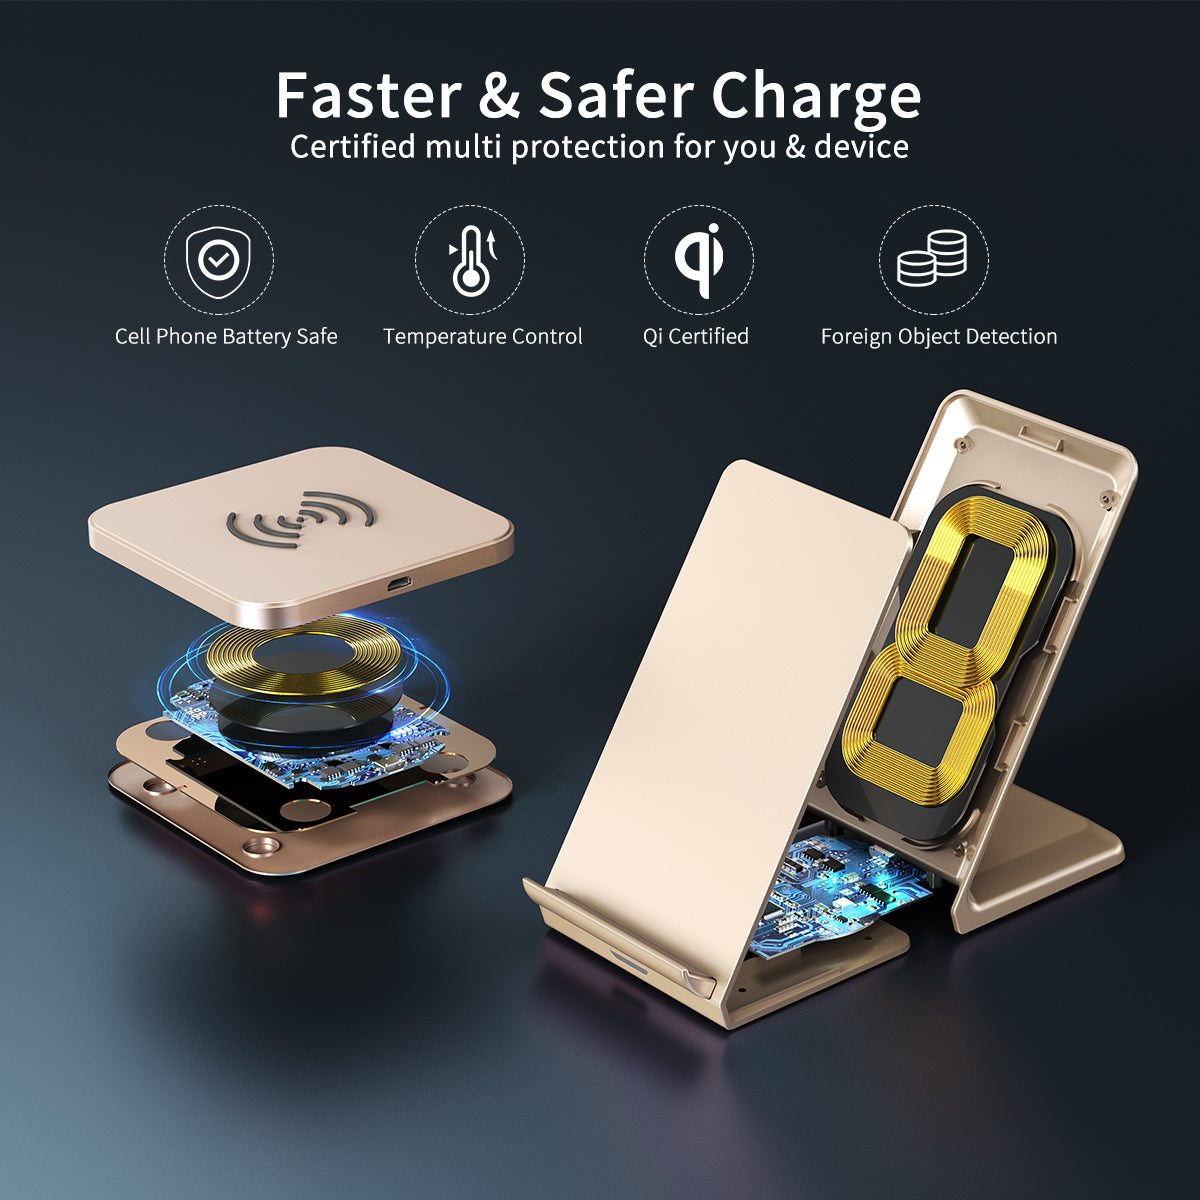 MIX00094 Lot de 2 chargeurs sans fil 10 W Max certifiés Qi pour chargeur rapide sans fil compatible iPhone 12/12 Pro/SE 2020/11 Pro/XS Max/X, Galaxy S21/S21+/S20+/Note 10, AirPods Pro/2